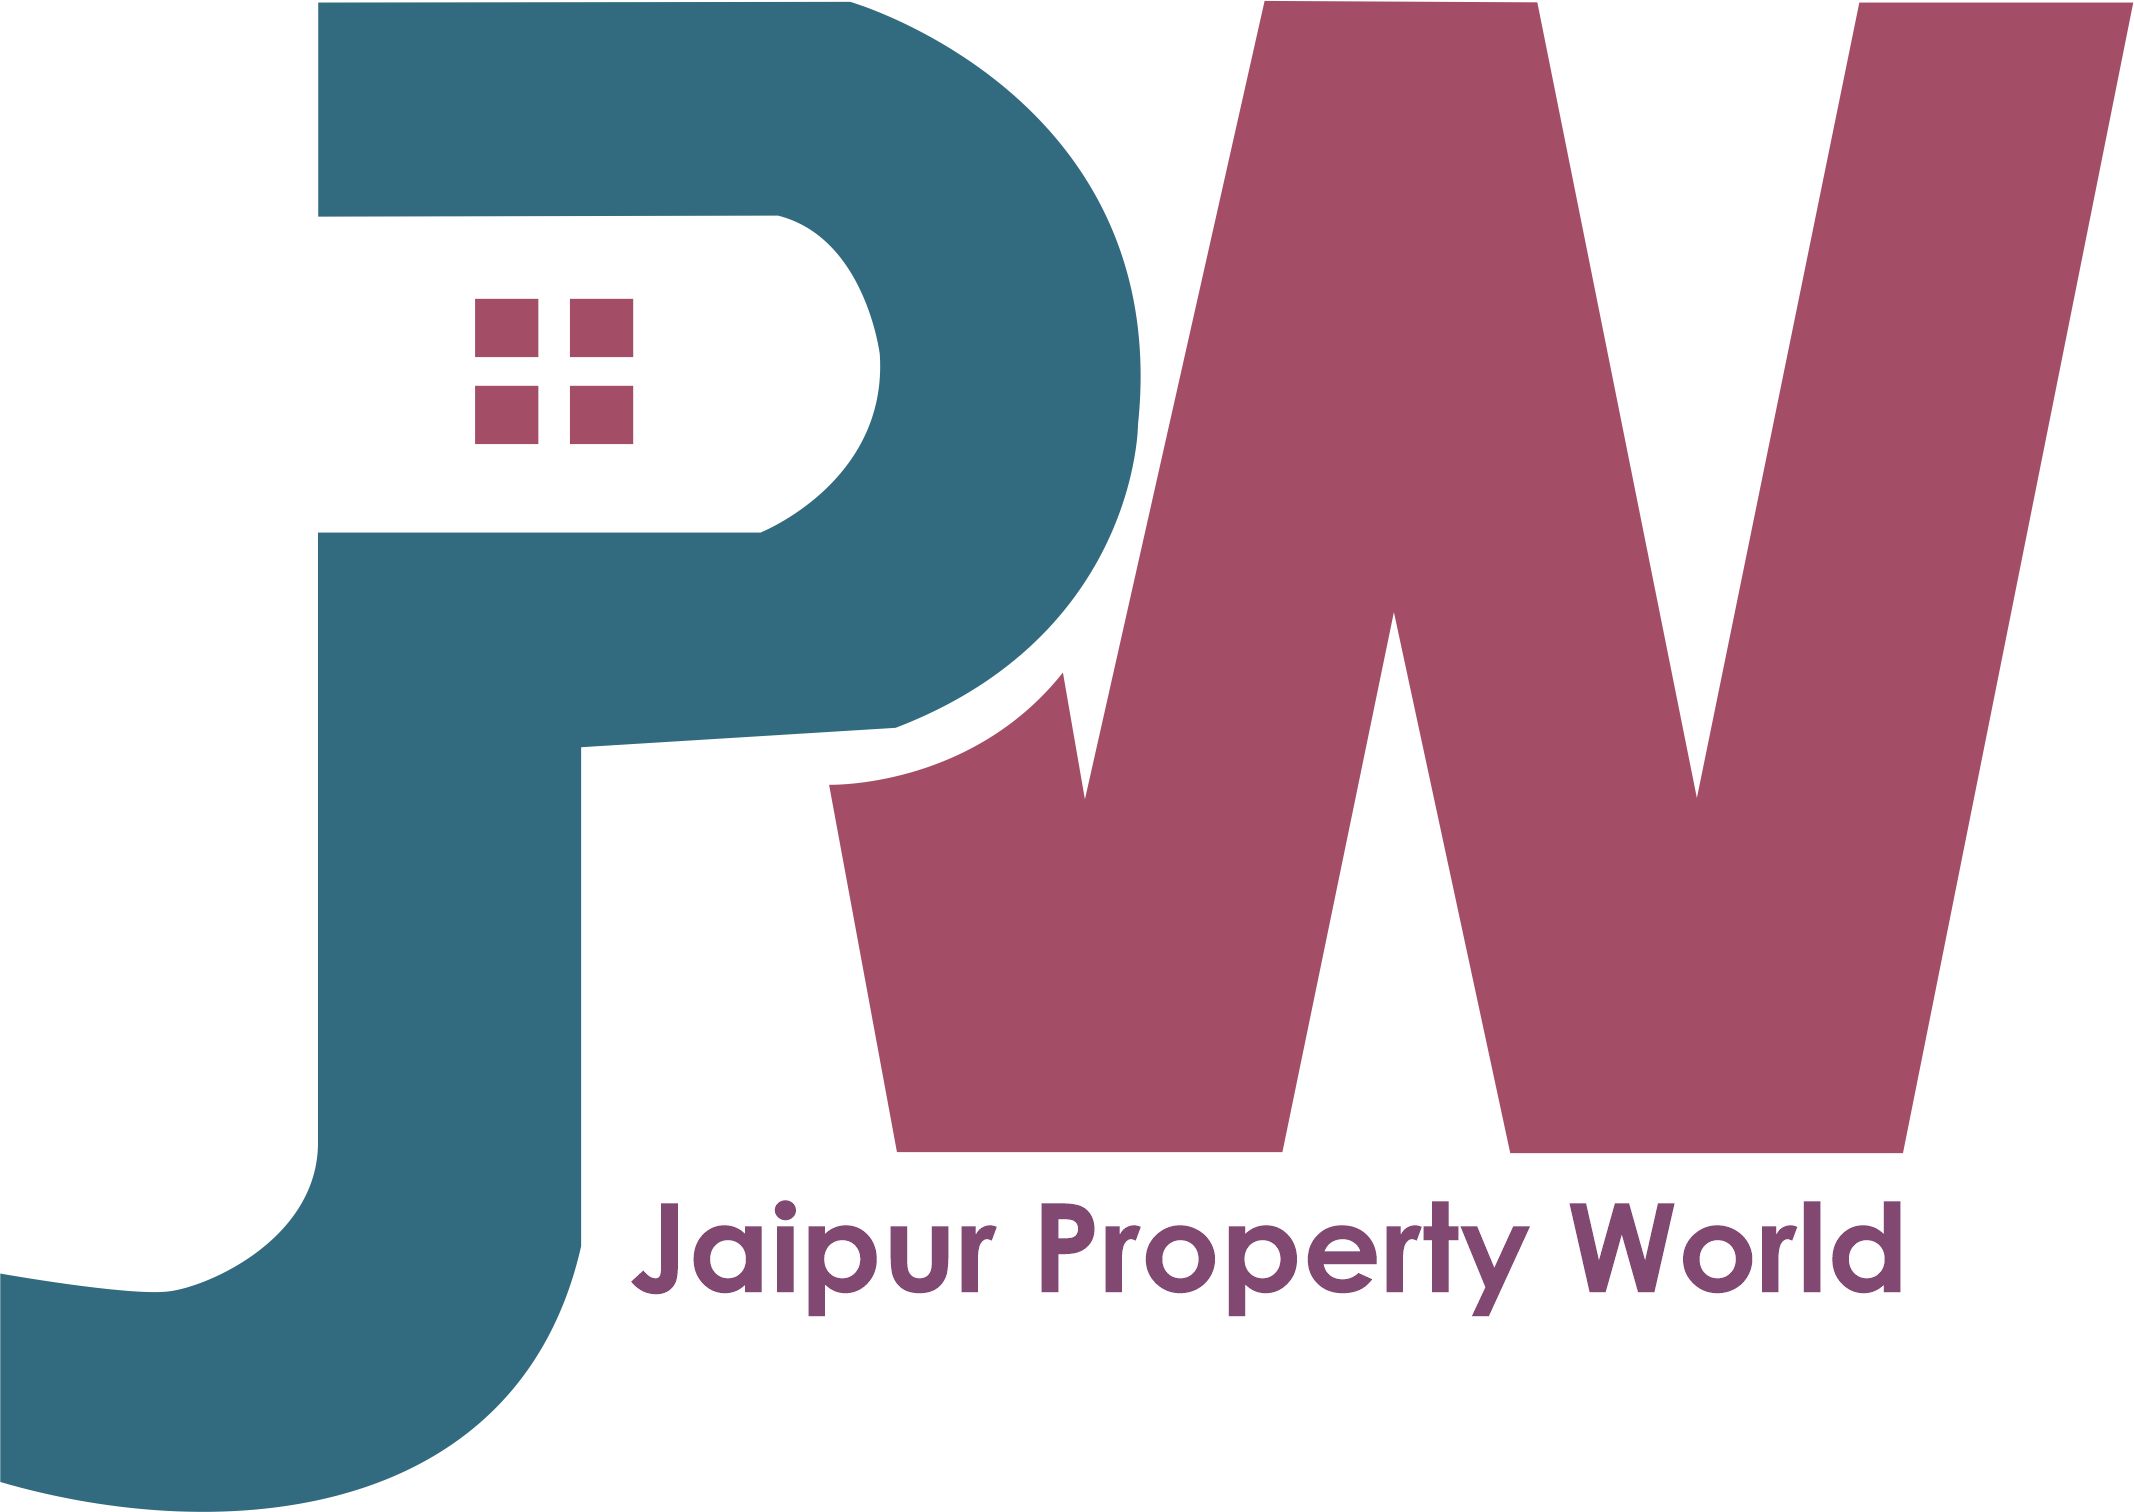 Jaipur Property World